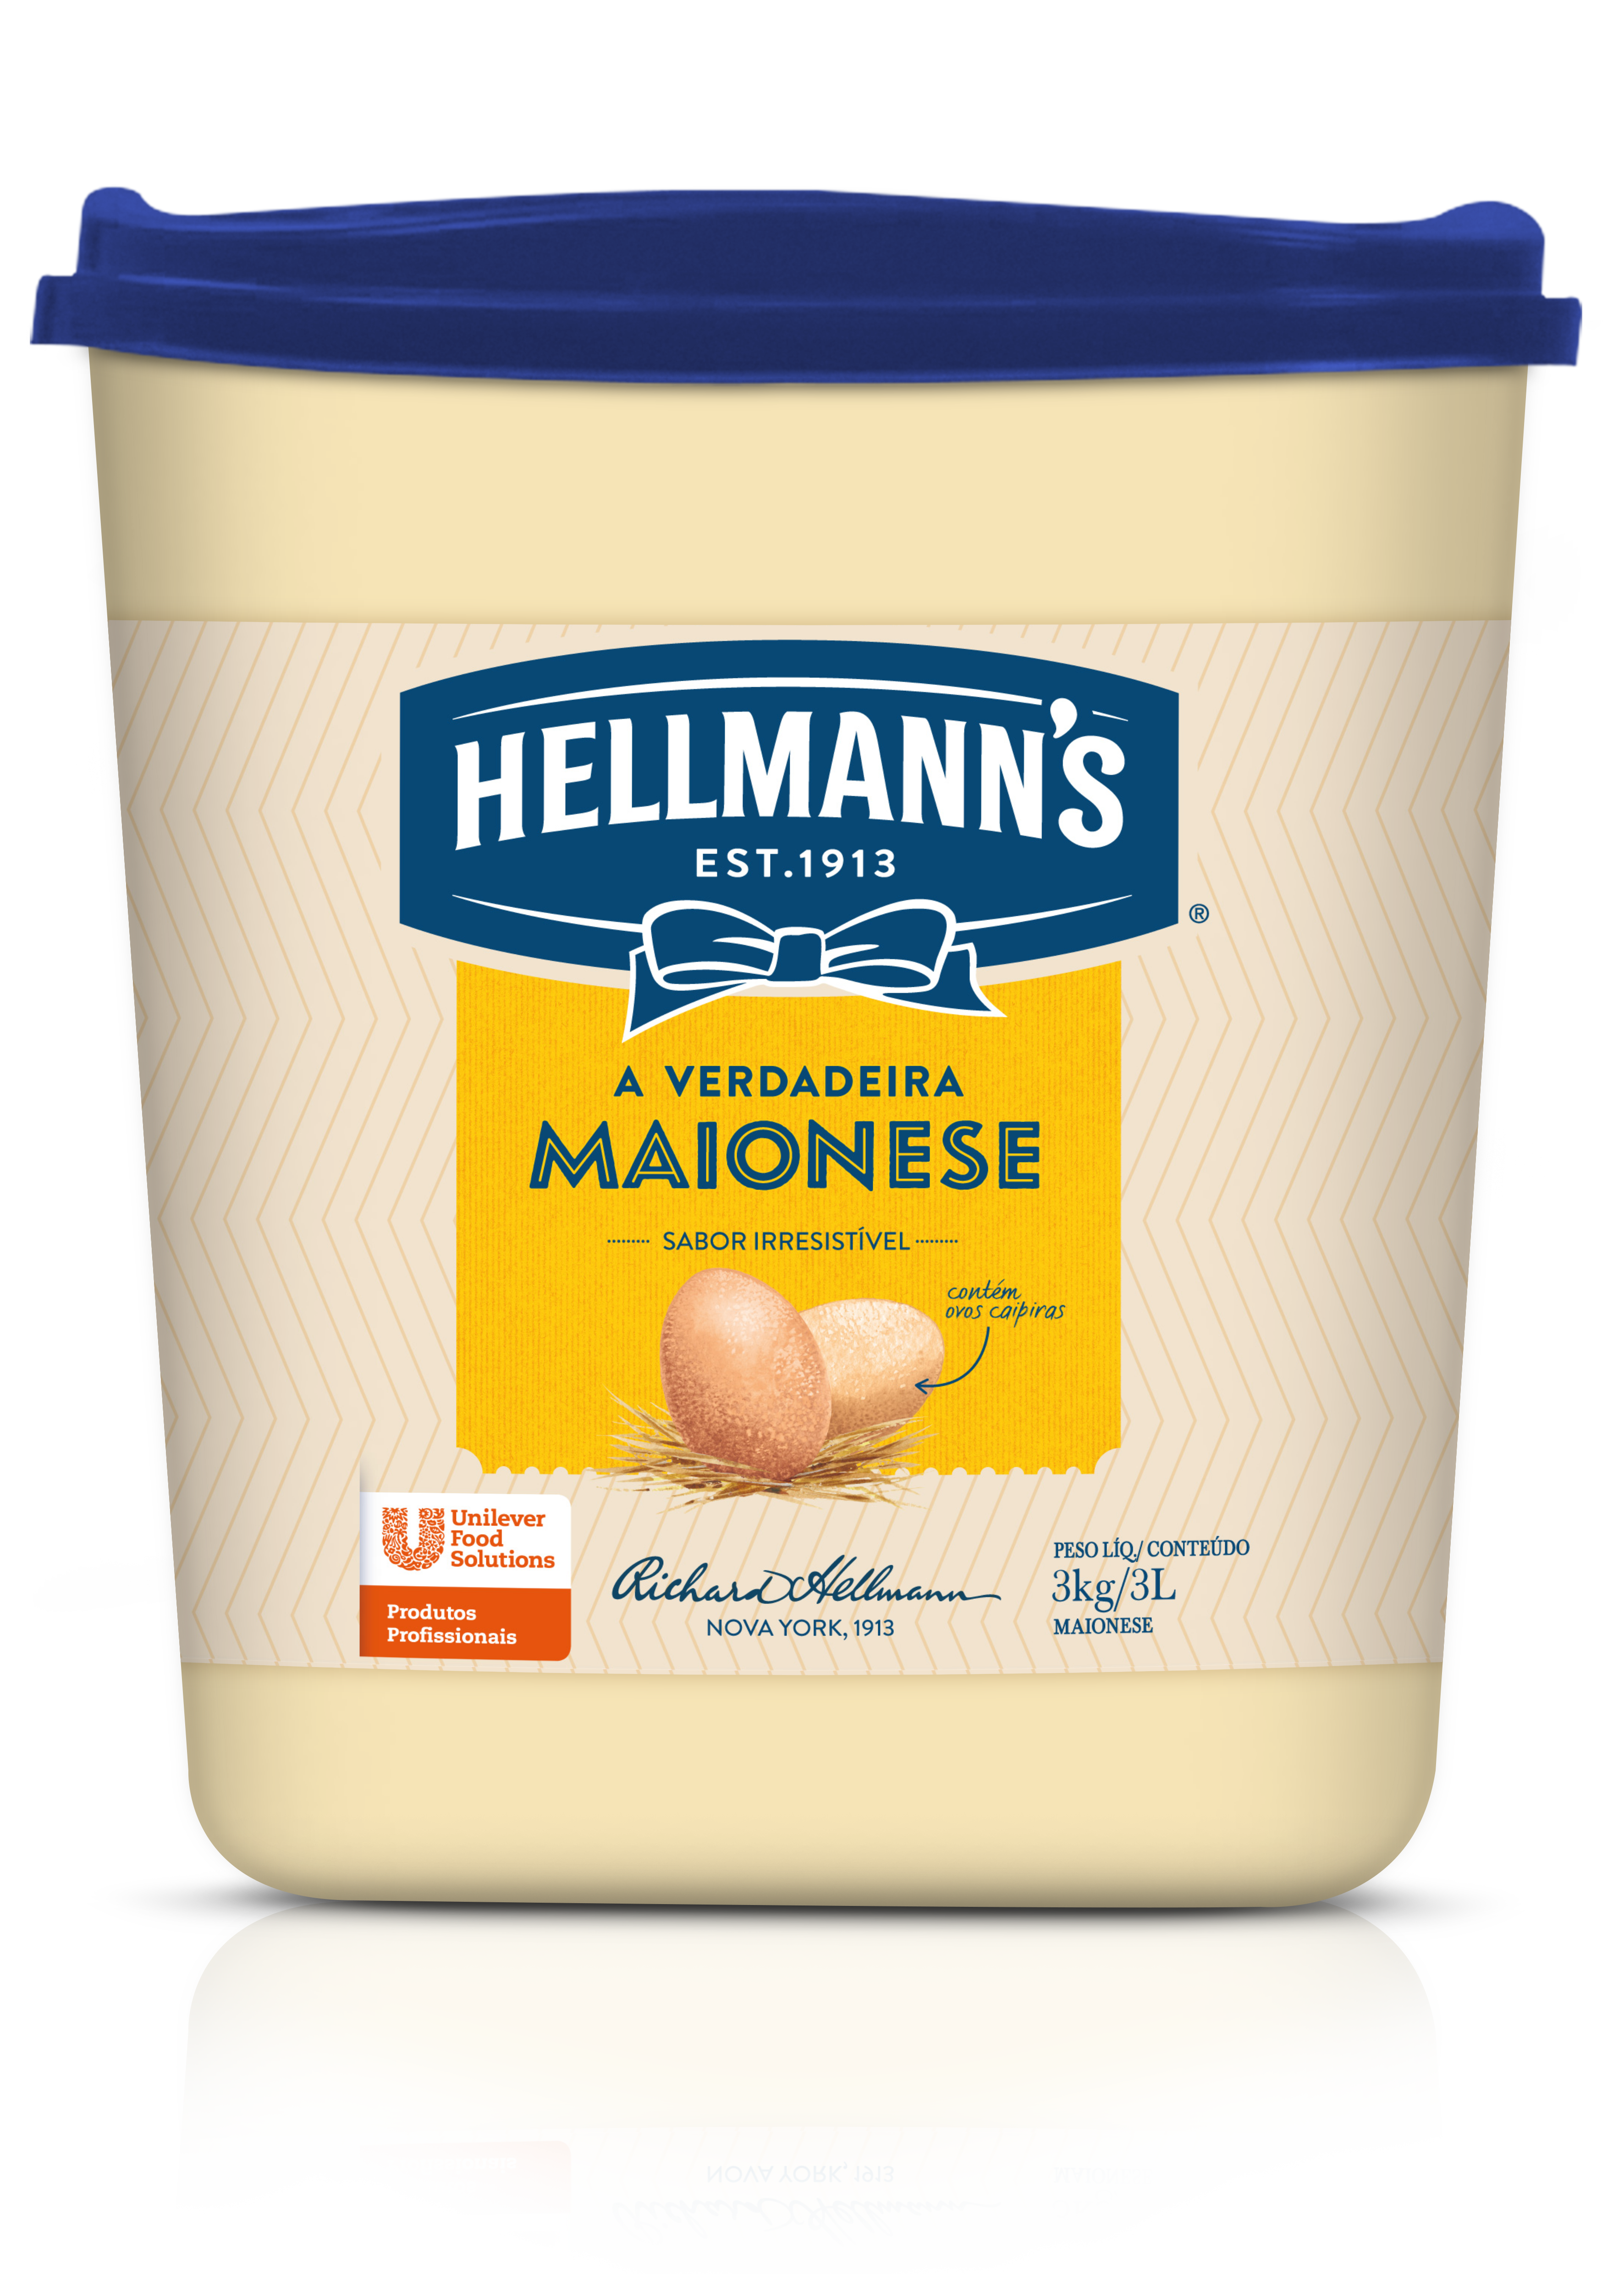 Maionese Hellmann's Balde 3 kg - Hellmann’s dá um sabor especial aos seus pratos e melhora a imagem do seu restaurante.